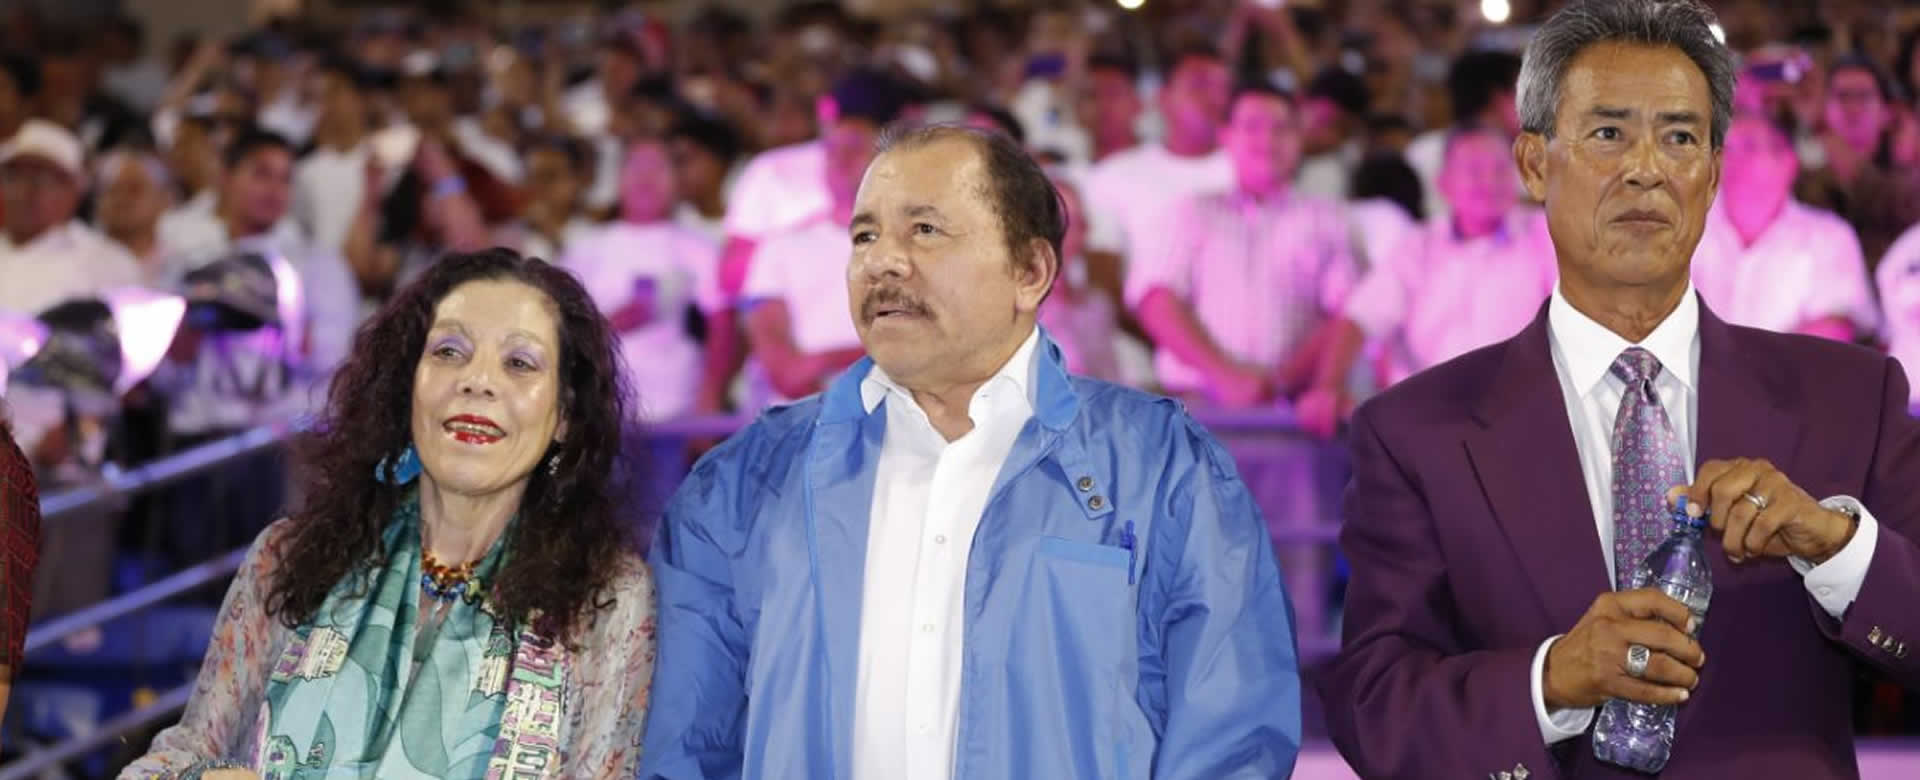 Dedicarán premiación de "Los Mejores del Deporte" al Comandante Daniel Ortega